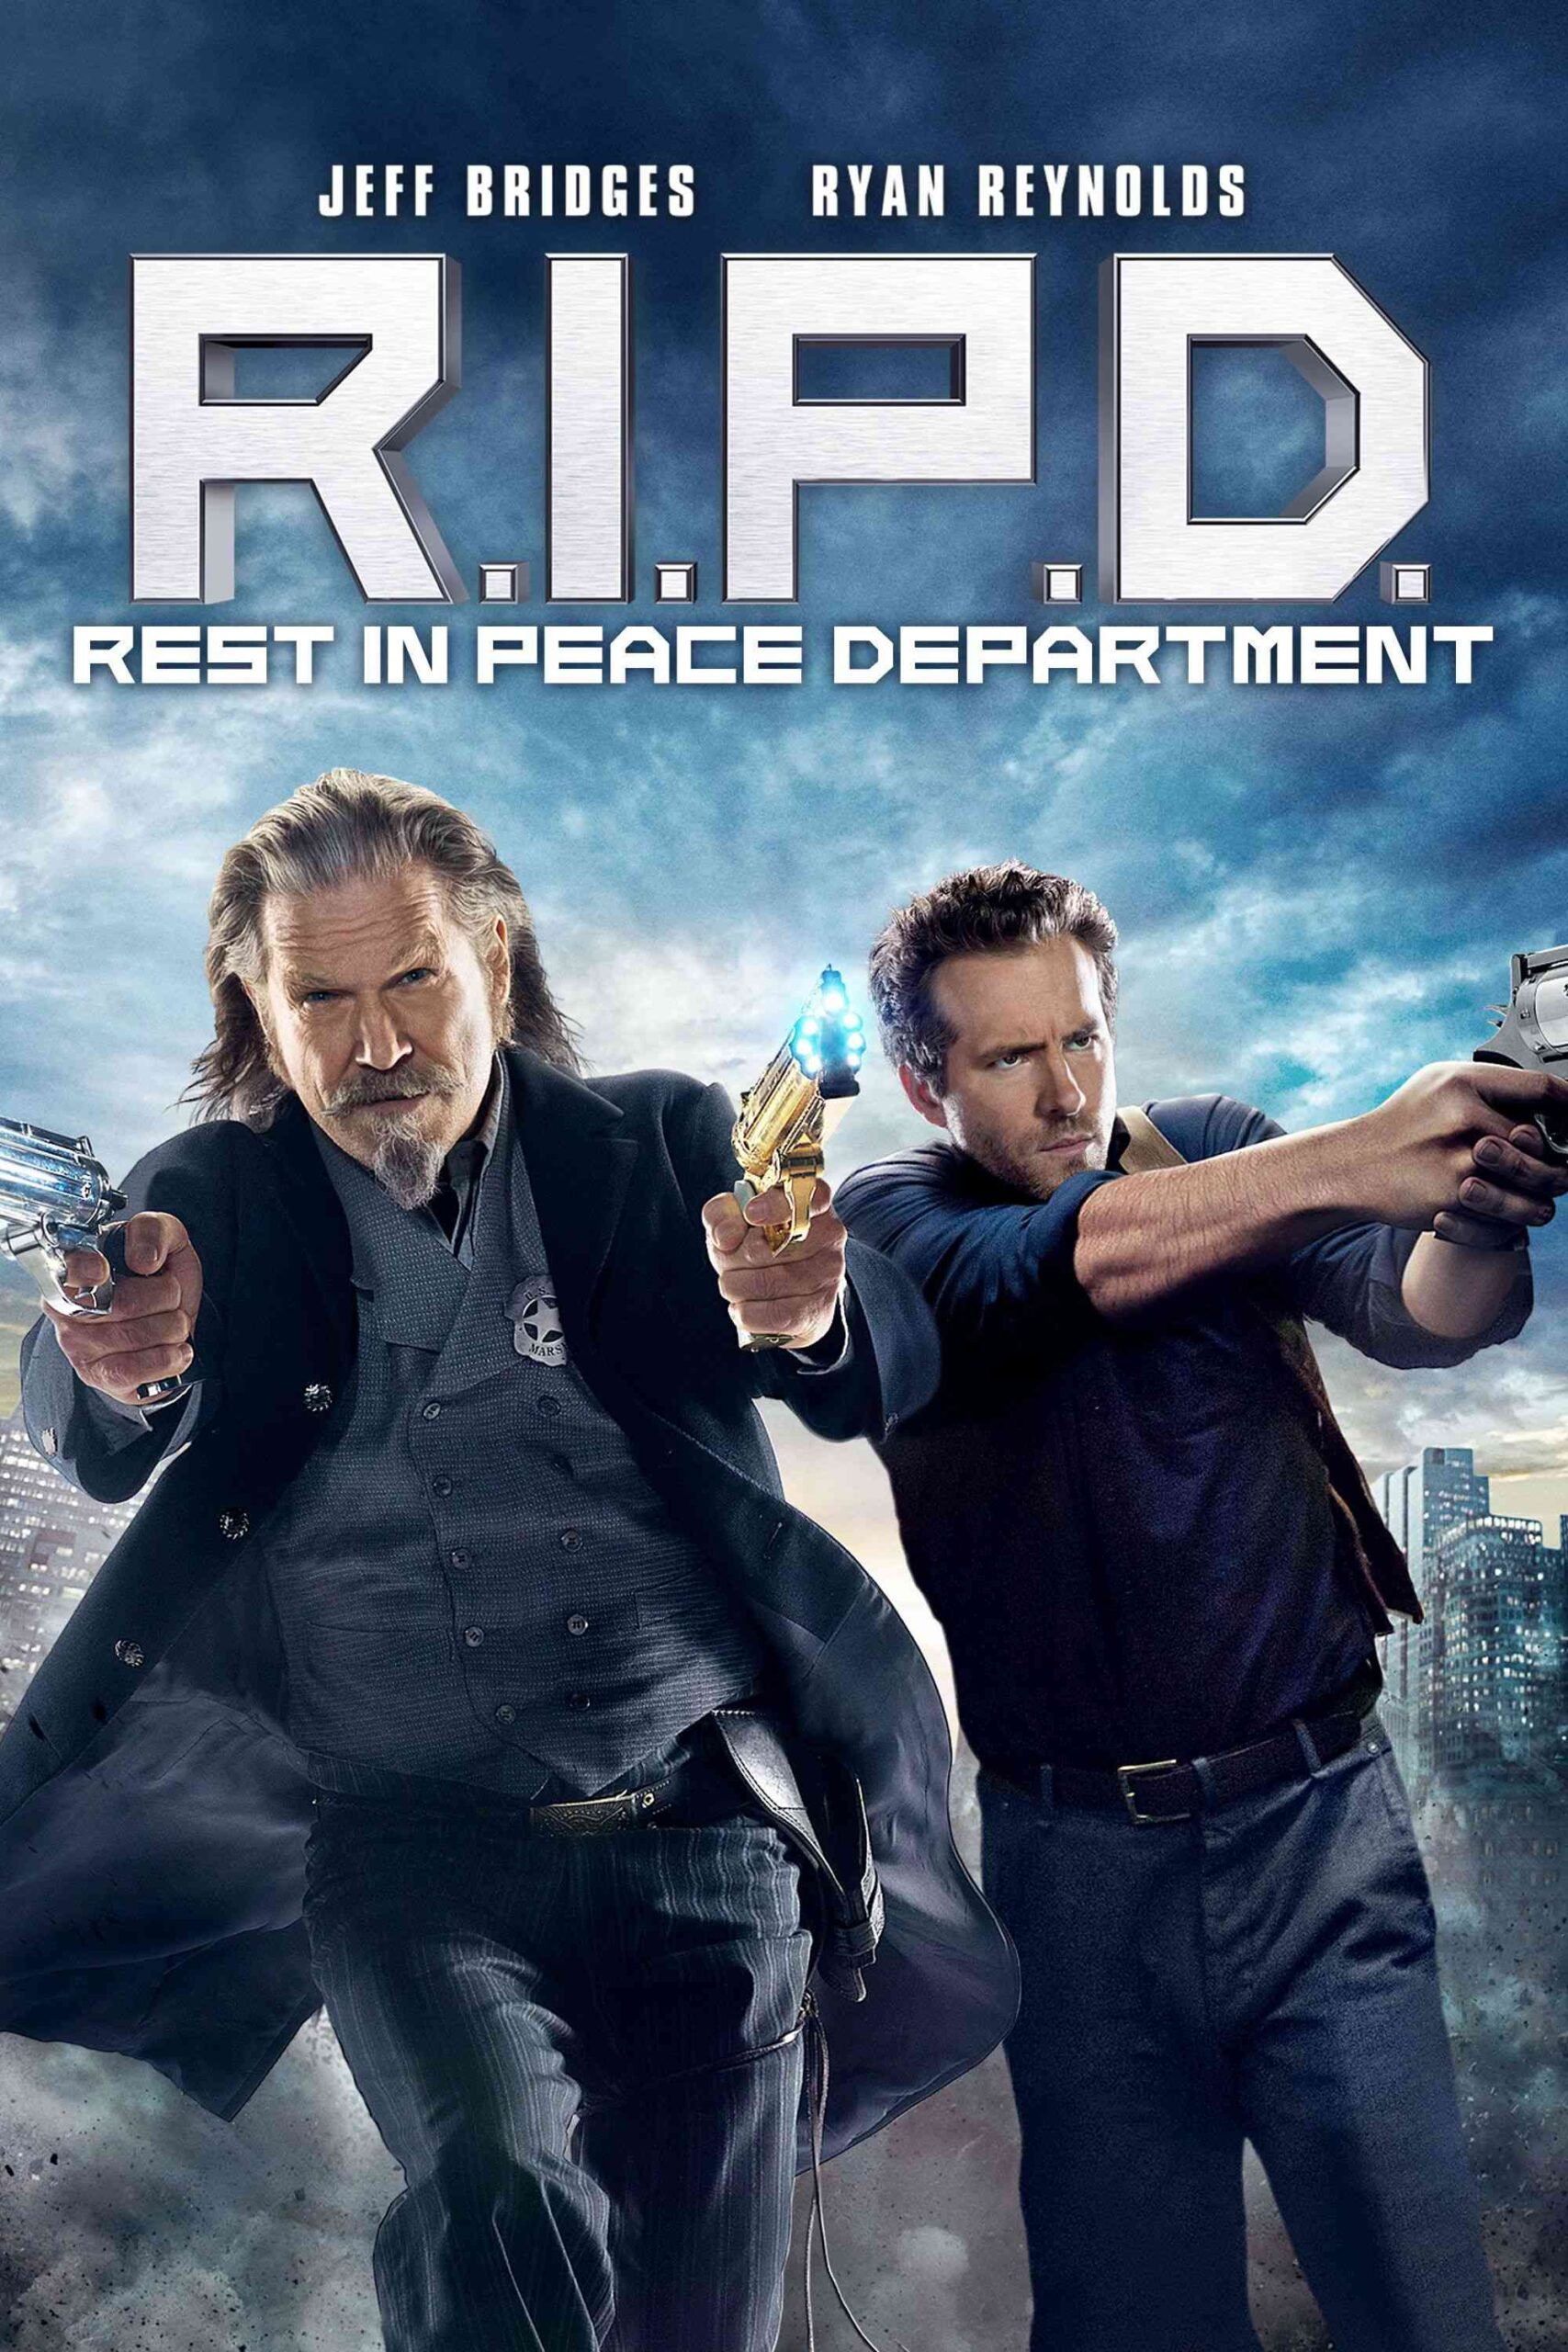 FULL MOVIE: R.I.P.D (2013) [Action]